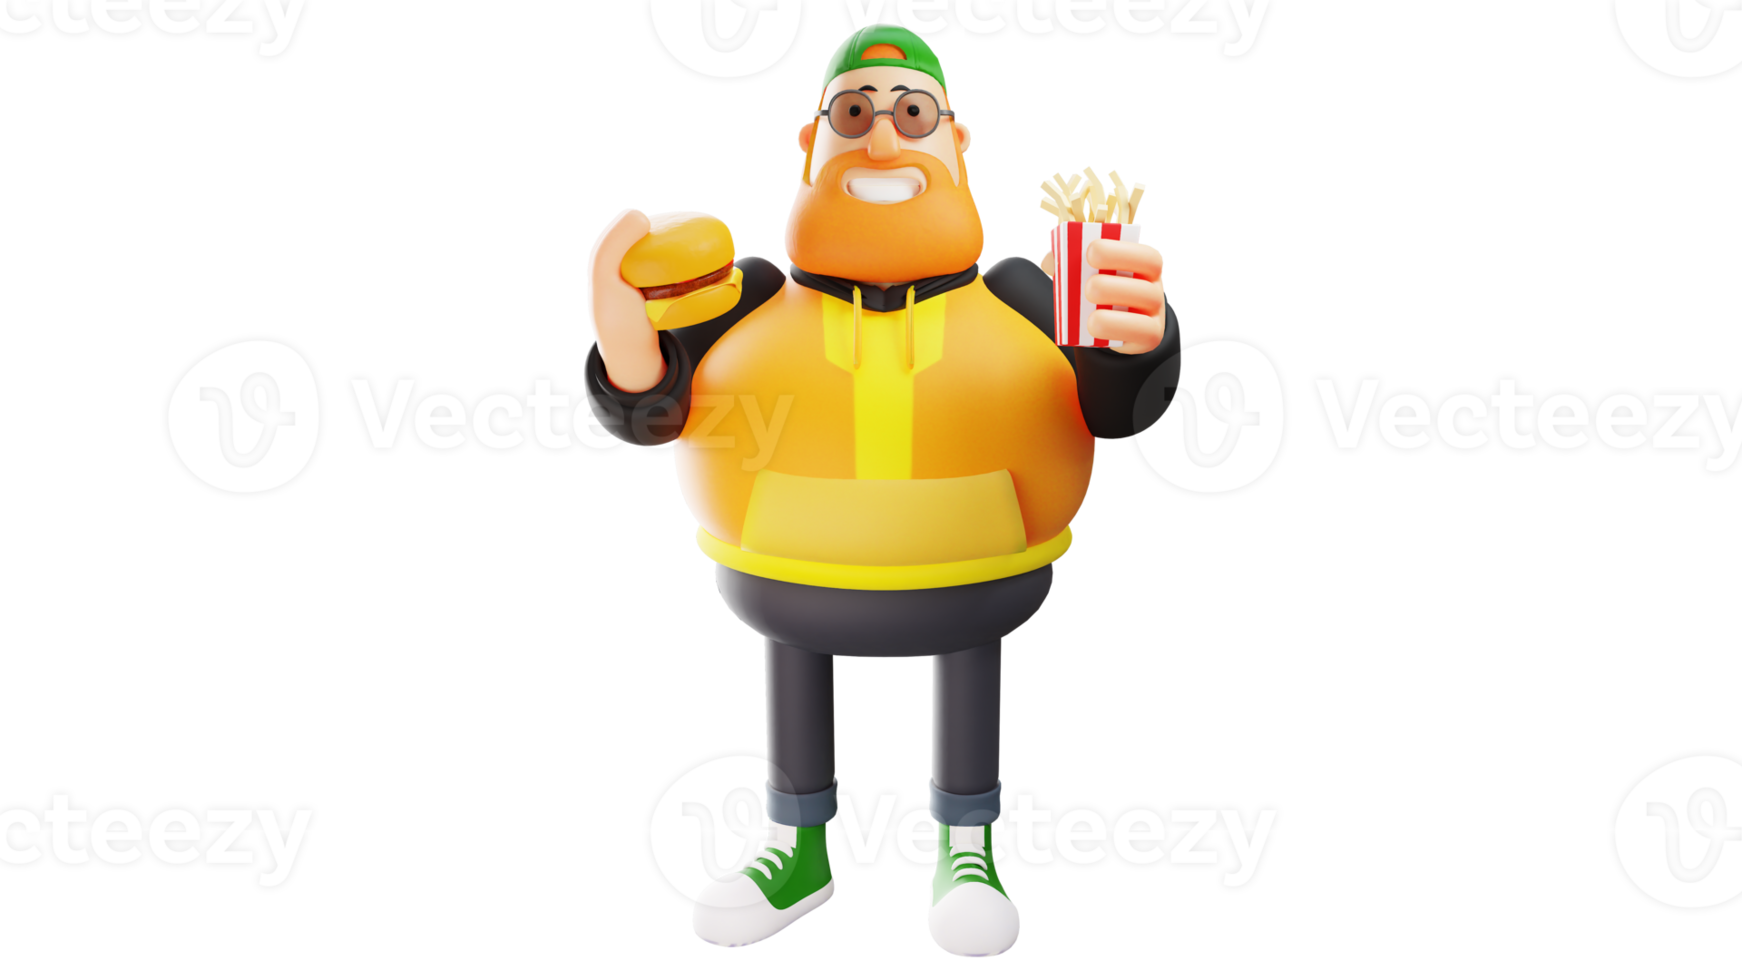 ilustração 3D. personagem de desenho animado 3d de homem gordo com fome. um homem gordo feliz está segurando um hambúrguer e batatas fritas. o gordo sorriu e estava pronto para comer. personagem de desenho animado 3d png